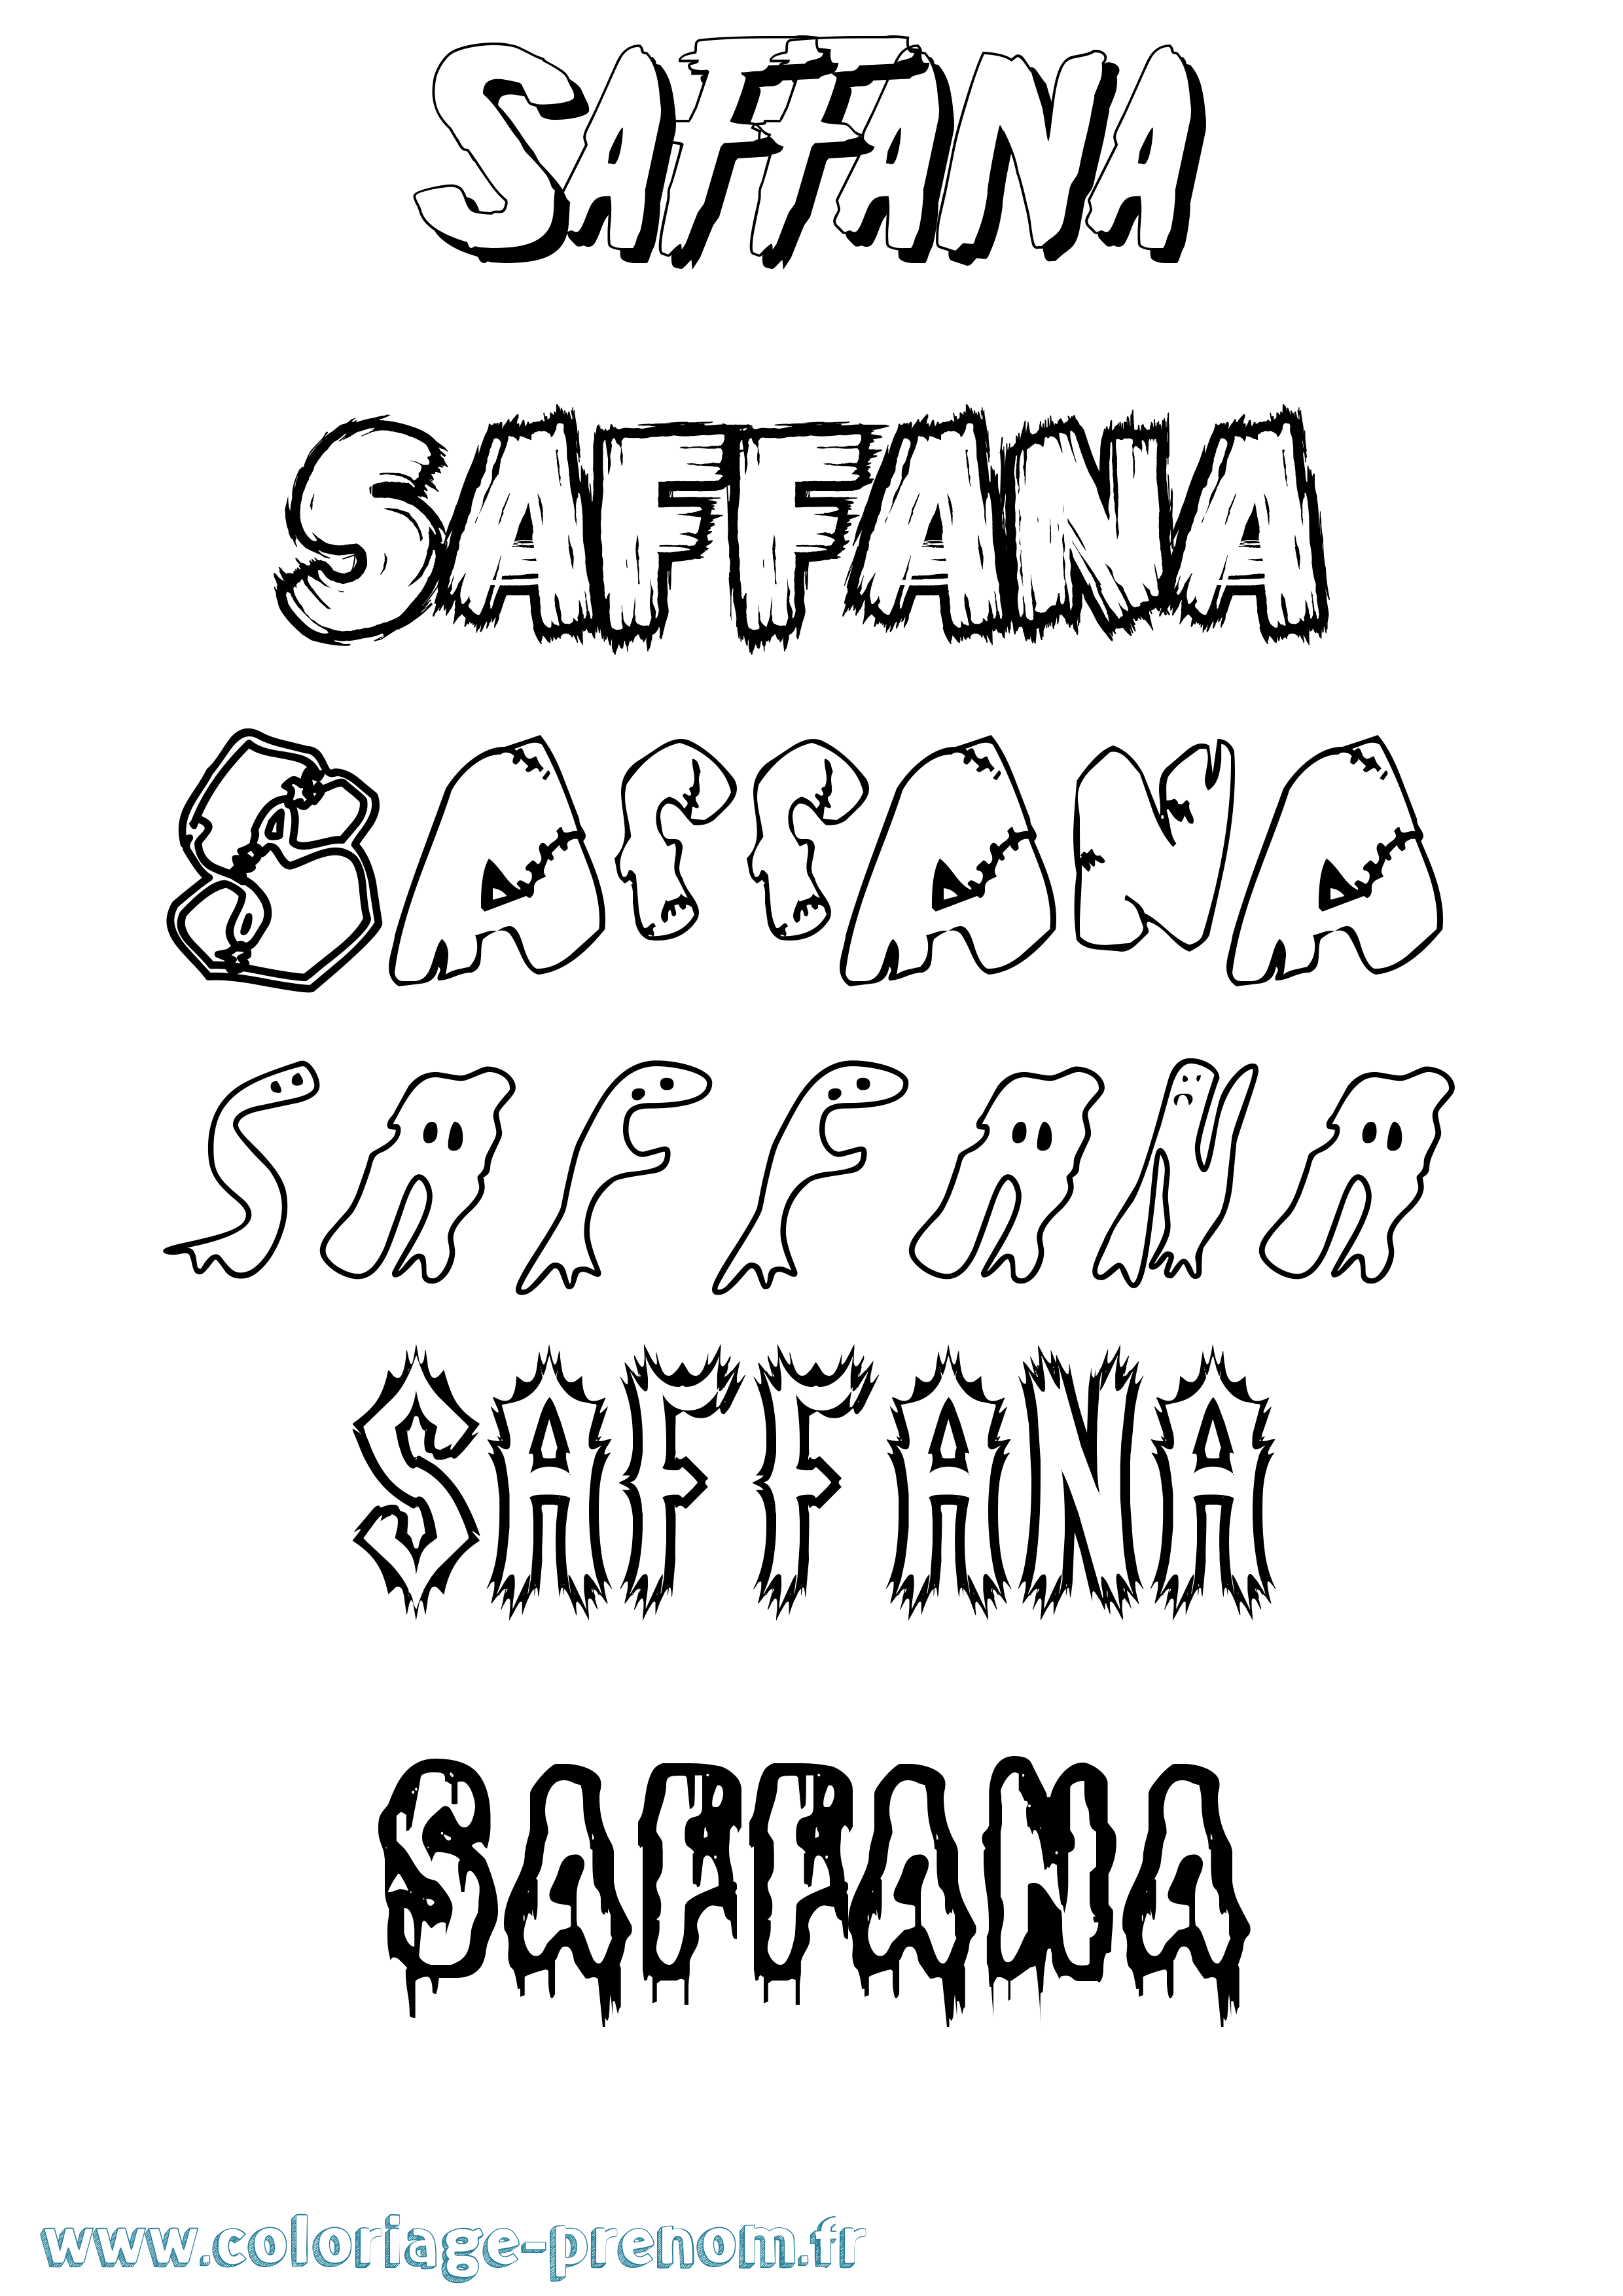 Coloriage prénom Saffana Frisson